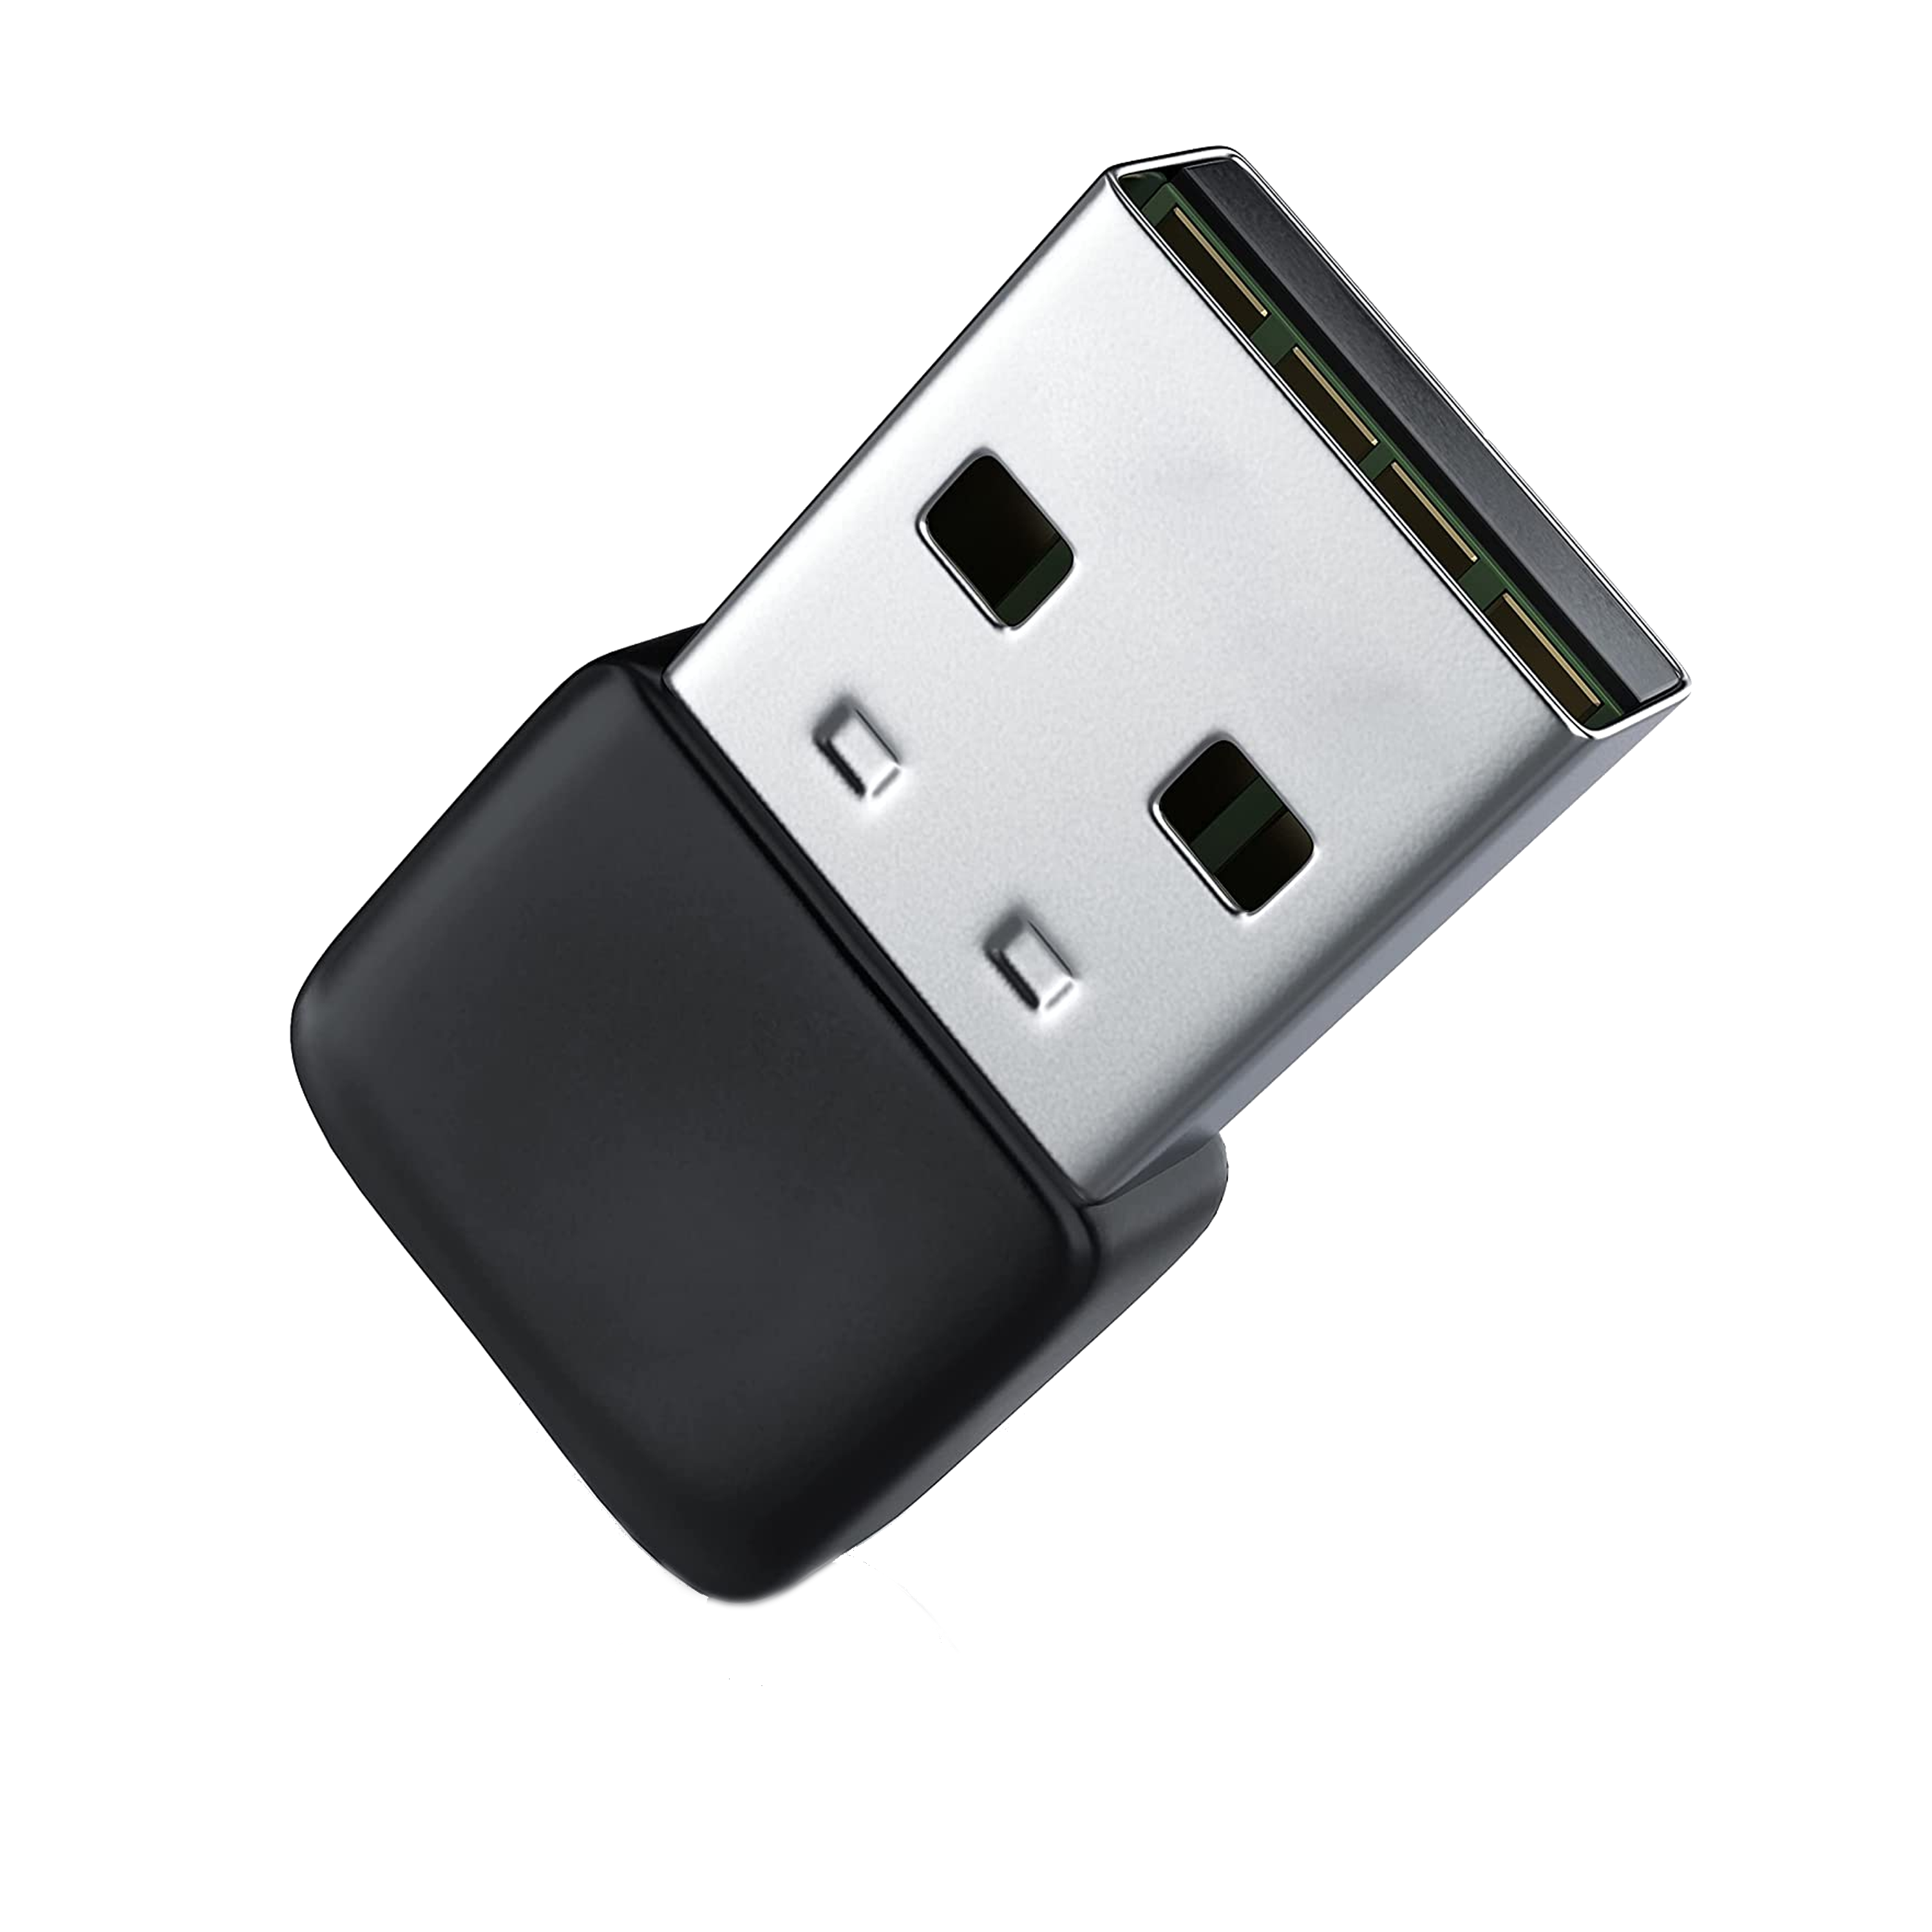 Clé USB Bluetooth 4.0 + EDR - Elcom Electronique Pau